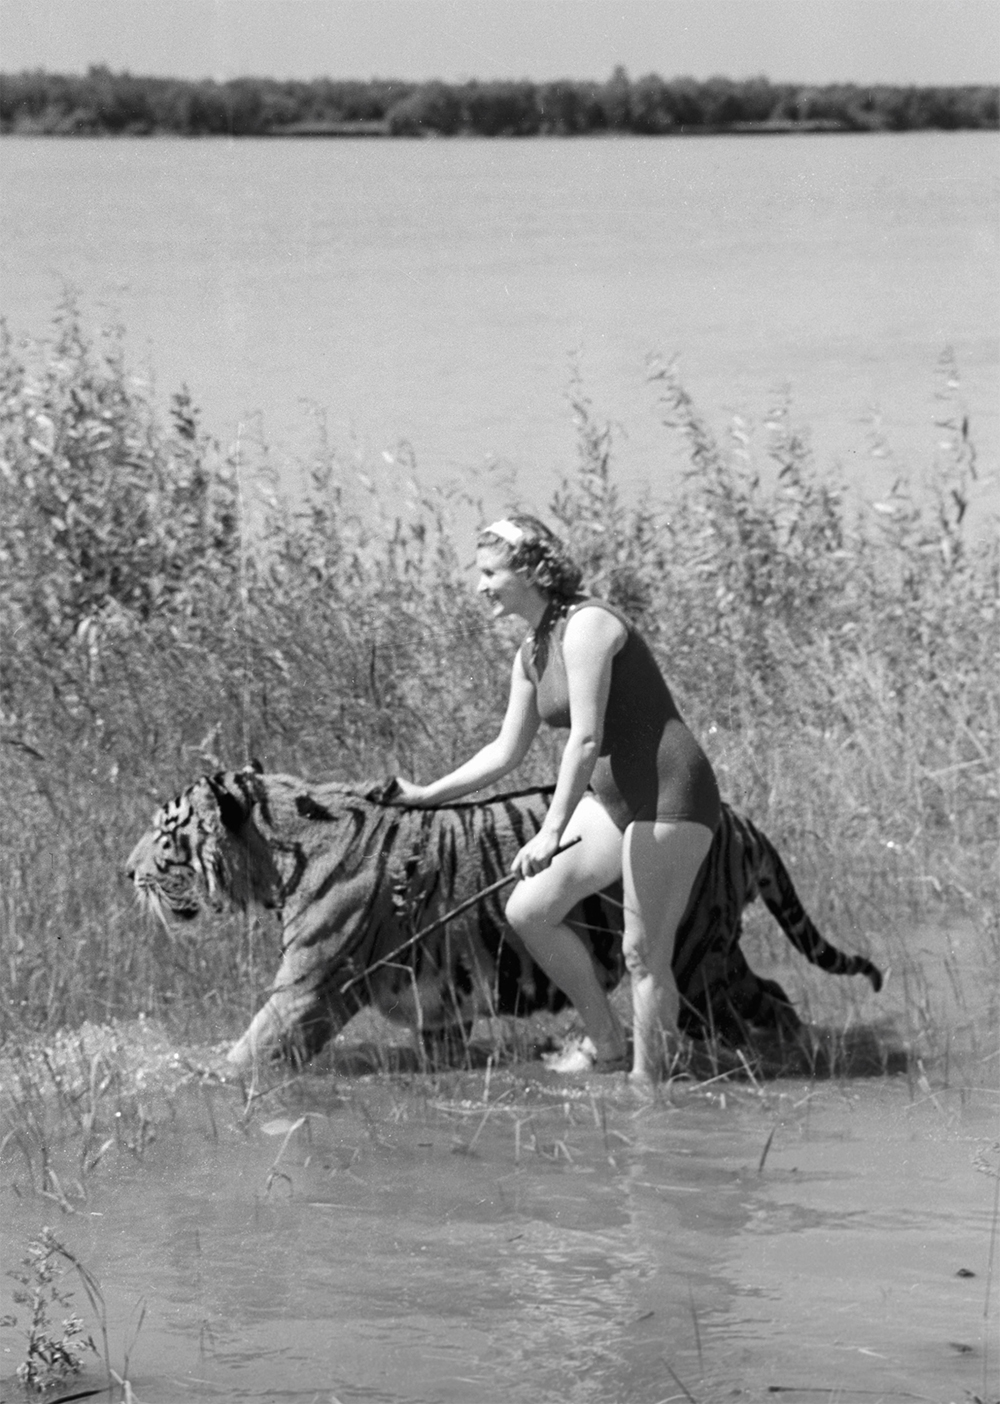 Артистка московского цирка, дрессировщица Маргарита Назарова со своим питомцем – уссурийским тигром Пуршем во время купания на реке Обь в районе города Новосибирска. 1956 год.